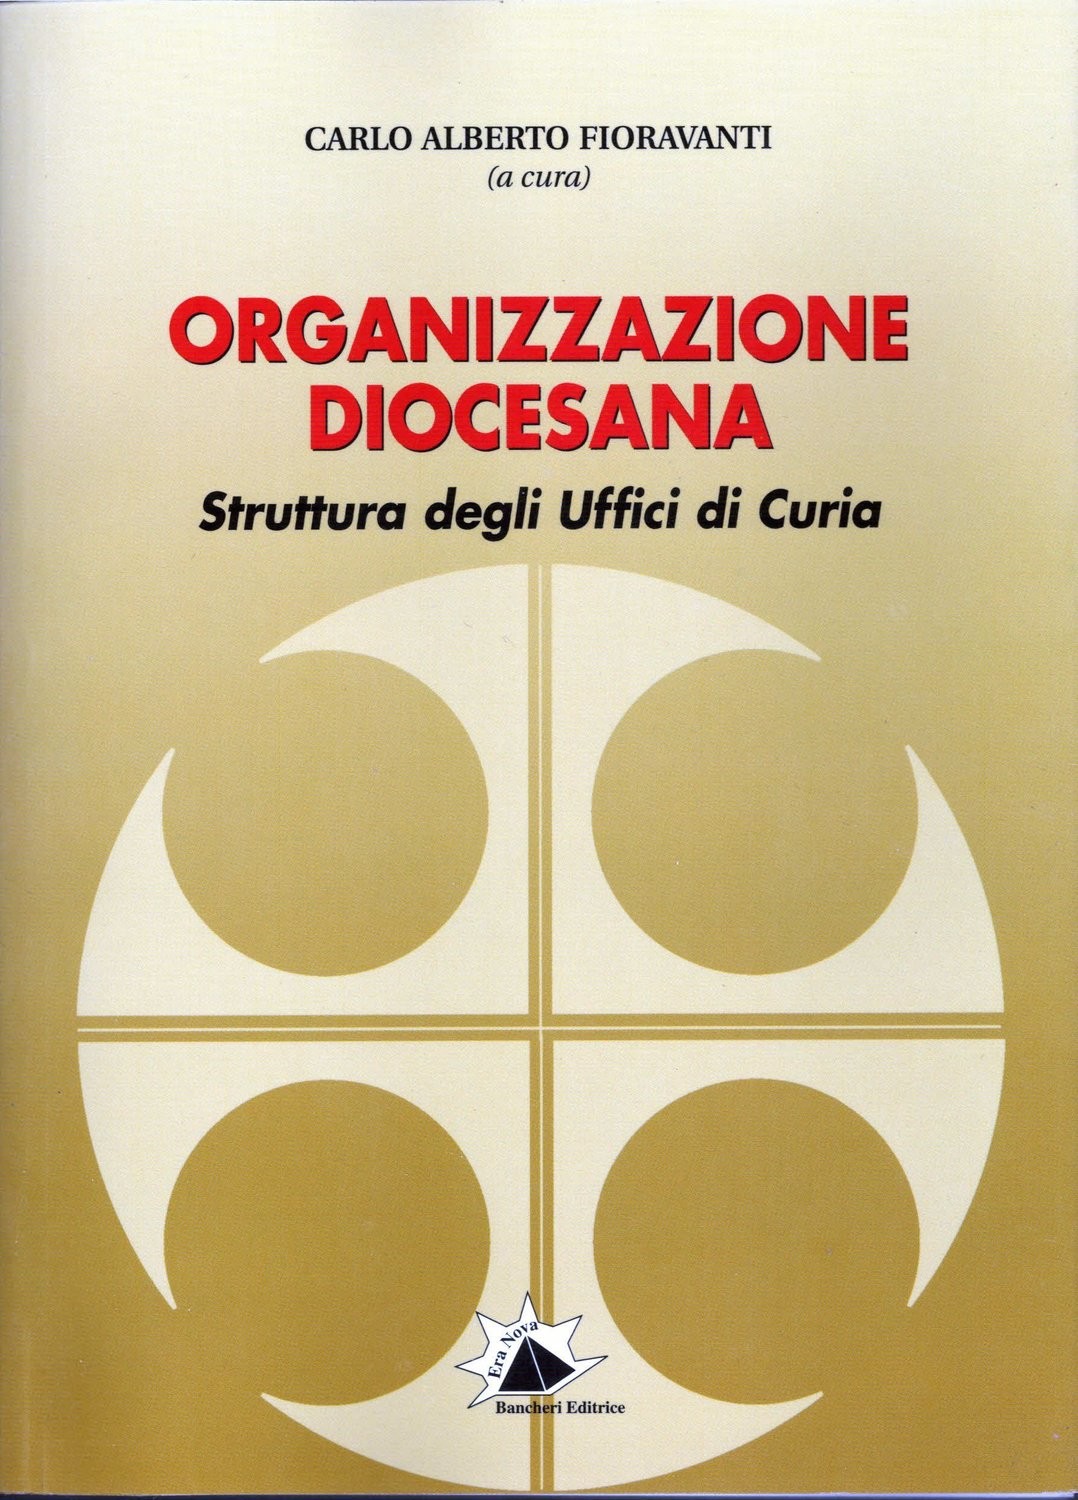 Organizzazione diocesana. Struttura degli uffici di Curia.
Carlo Alberto Fioravanti